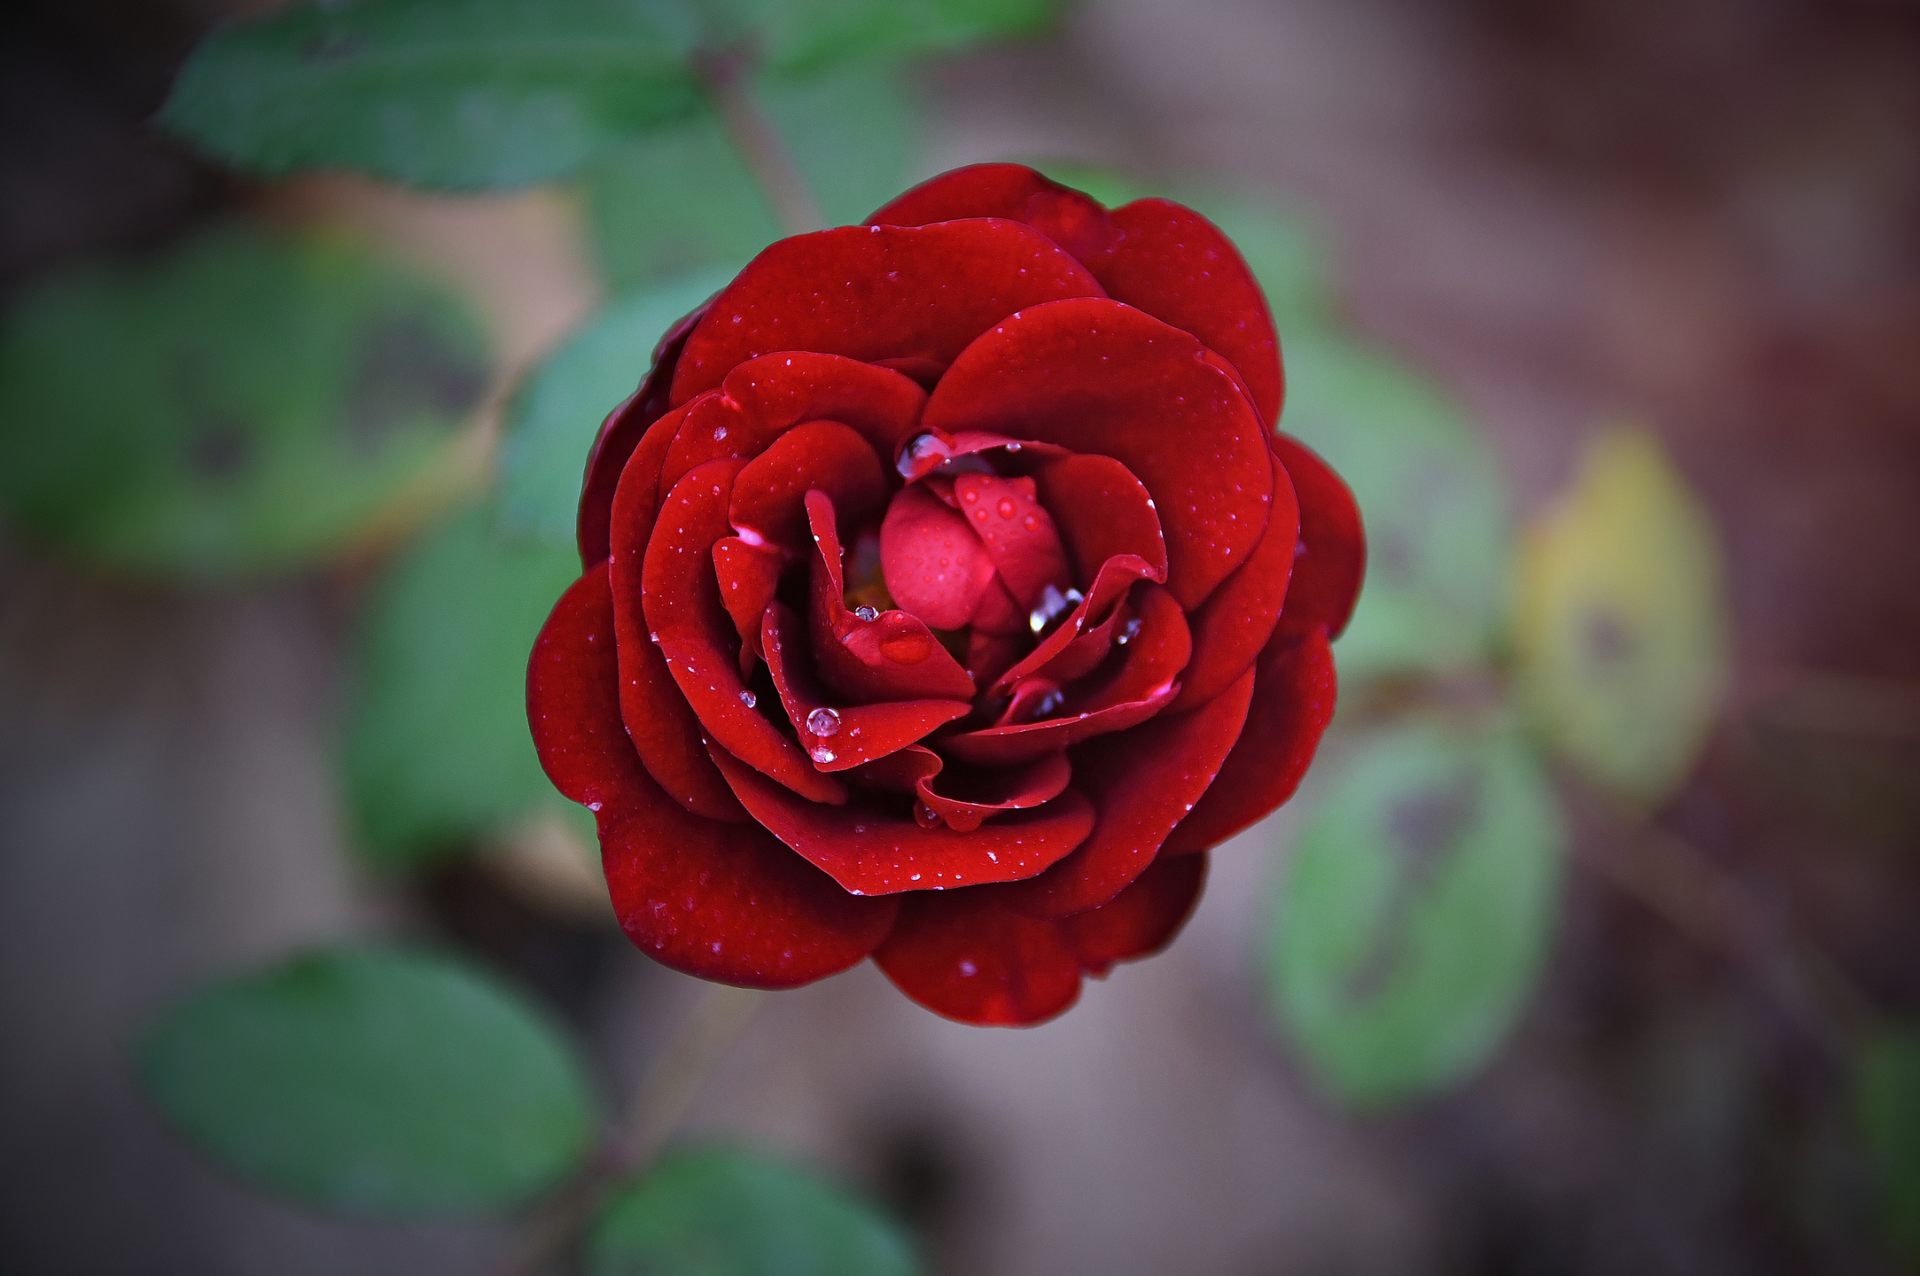 buongiorno download di sfondi,fiore,pianta fiorita,rosso,petalo,rose da giardino